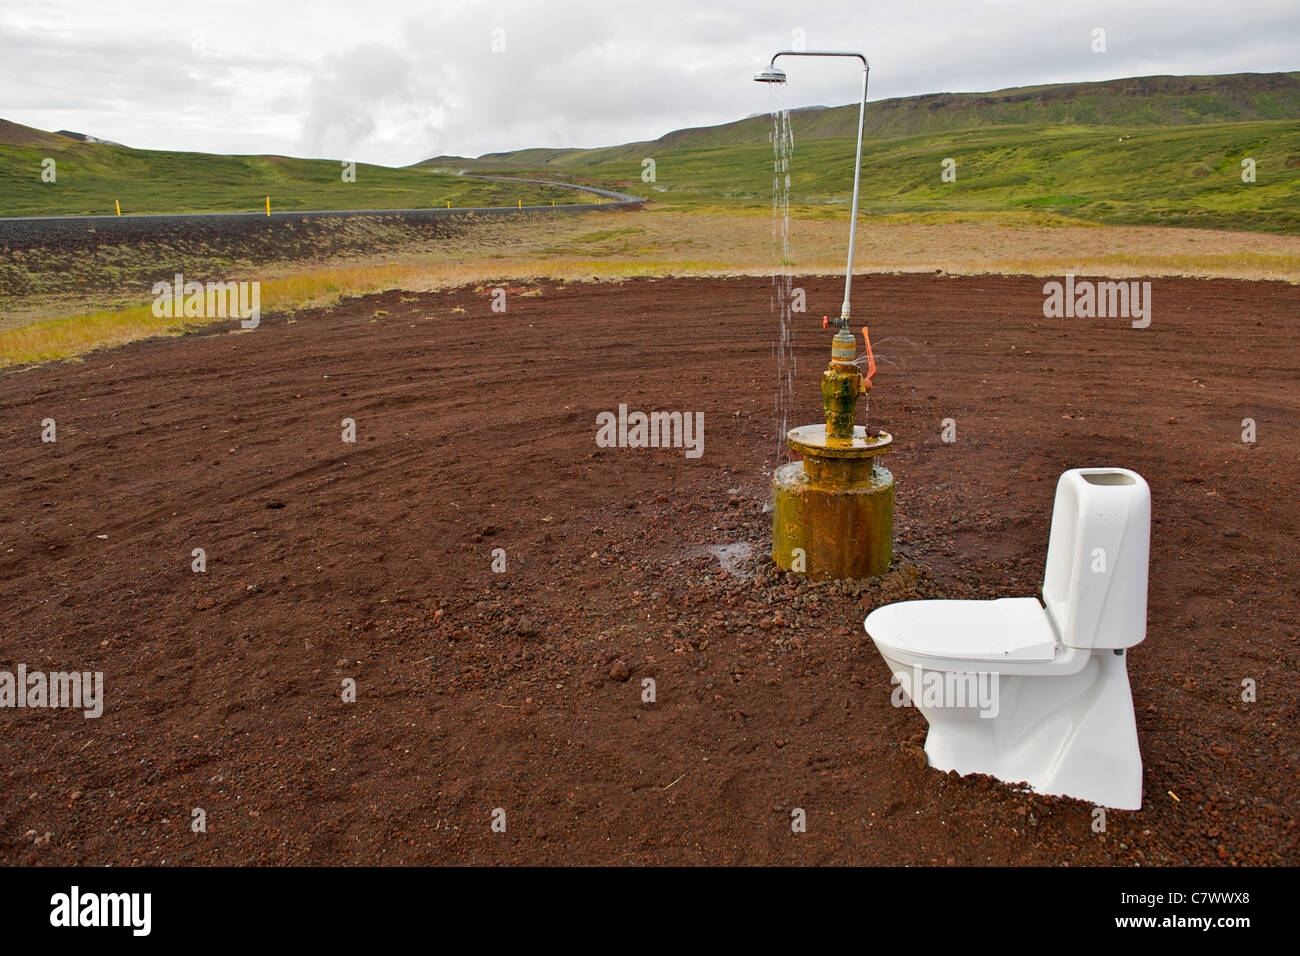 Unerklärliche Toilette und Dusche am Straßenrand in der Nähe von Myvatn im Nordosten Islands Krafla. Stockfoto